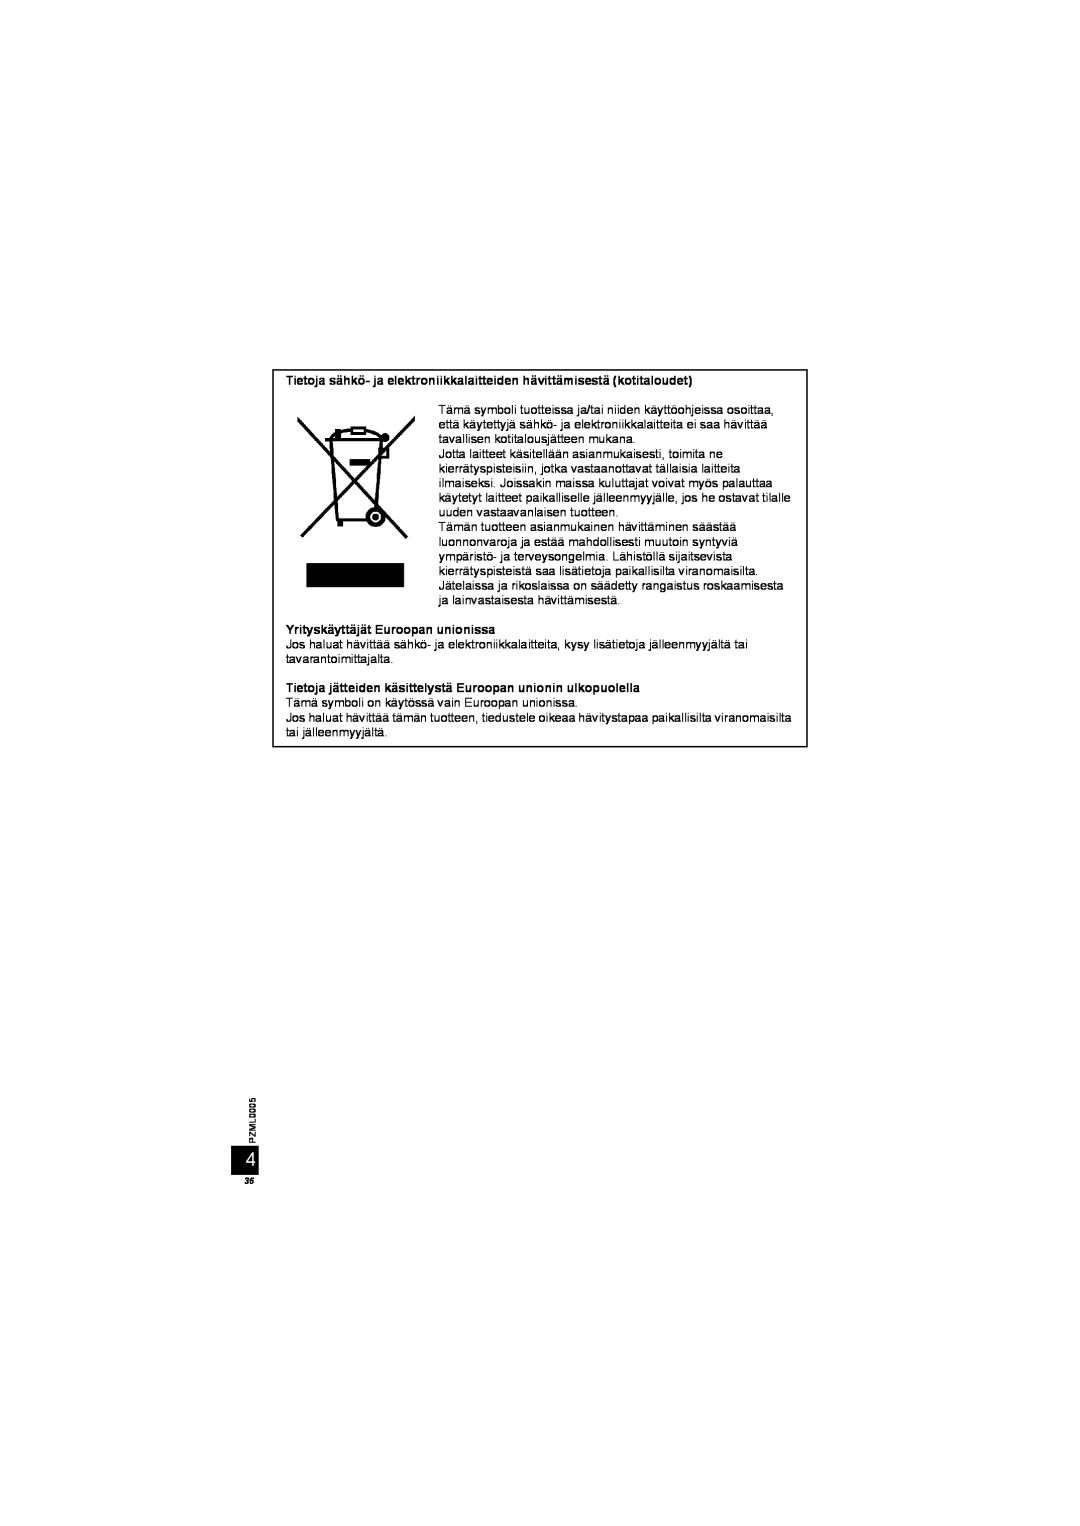 Panasonic DY-WL10 manual Tietoja sähkö- ja elektroniikkalaitteiden hävittämisestä kotitaloudet 